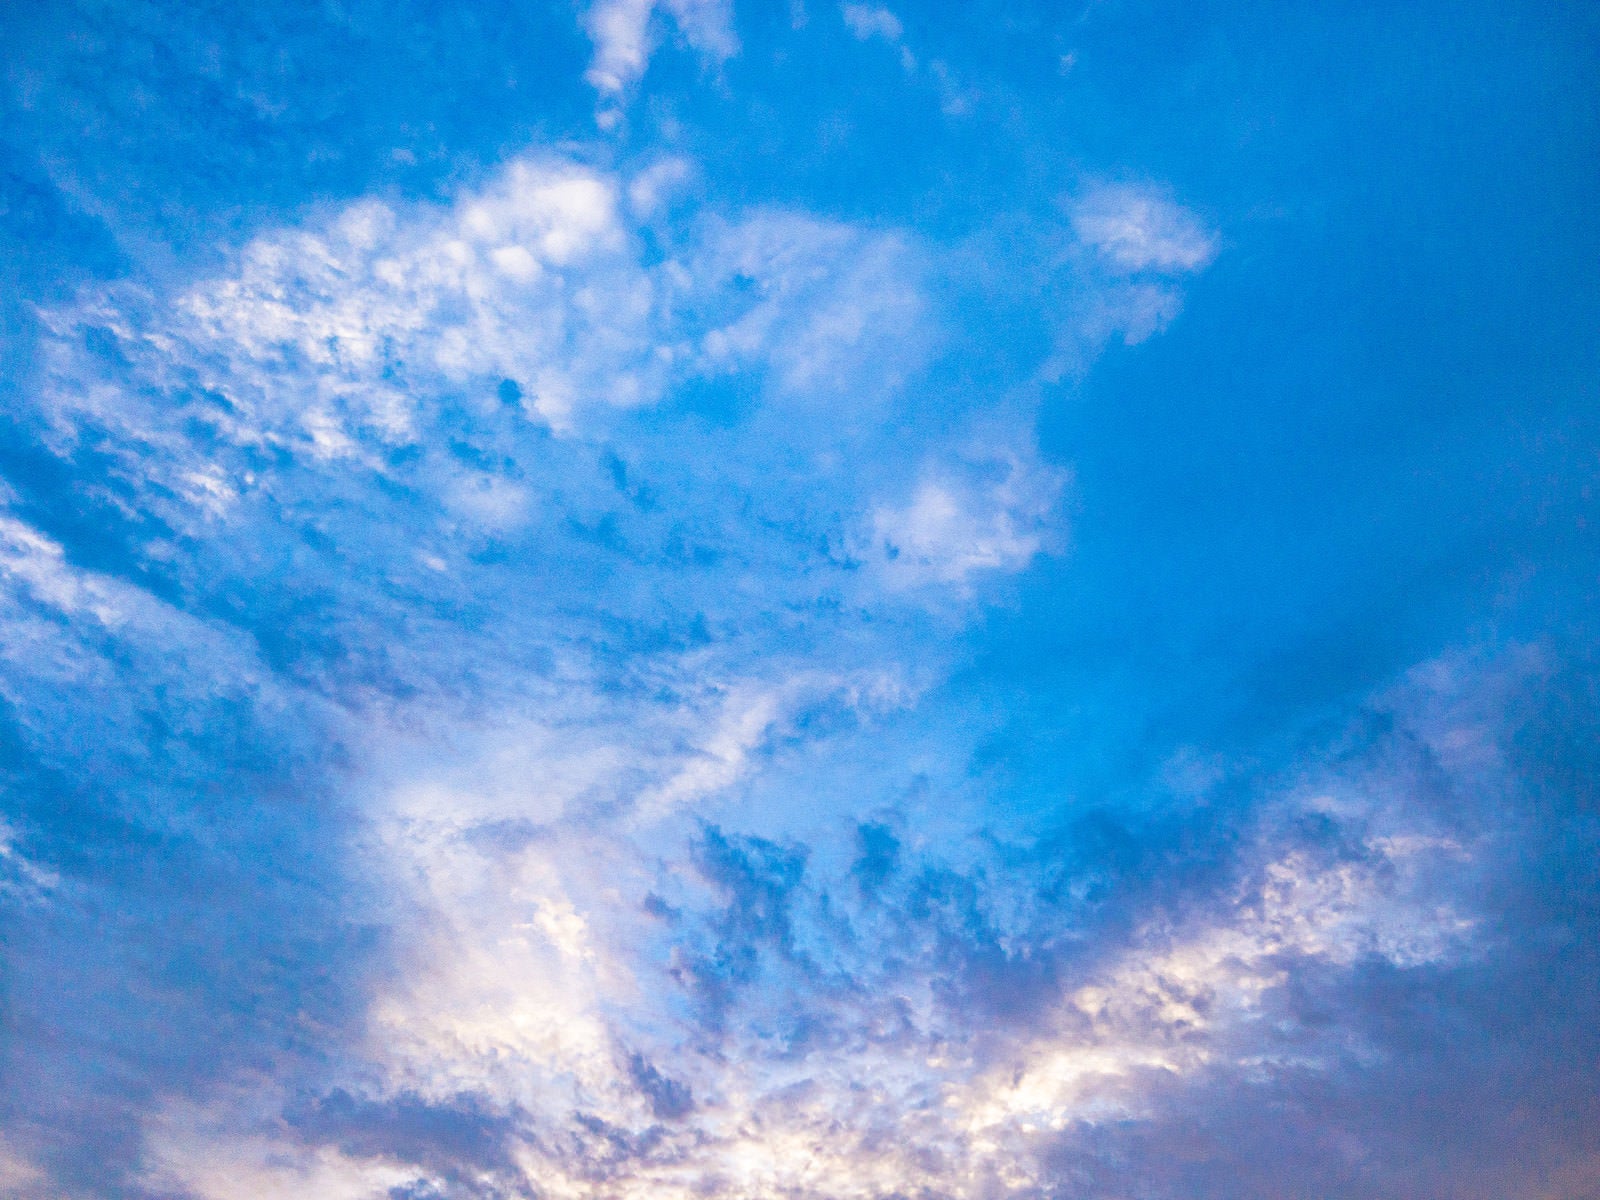 「青空を覆う厚い雲」の写真